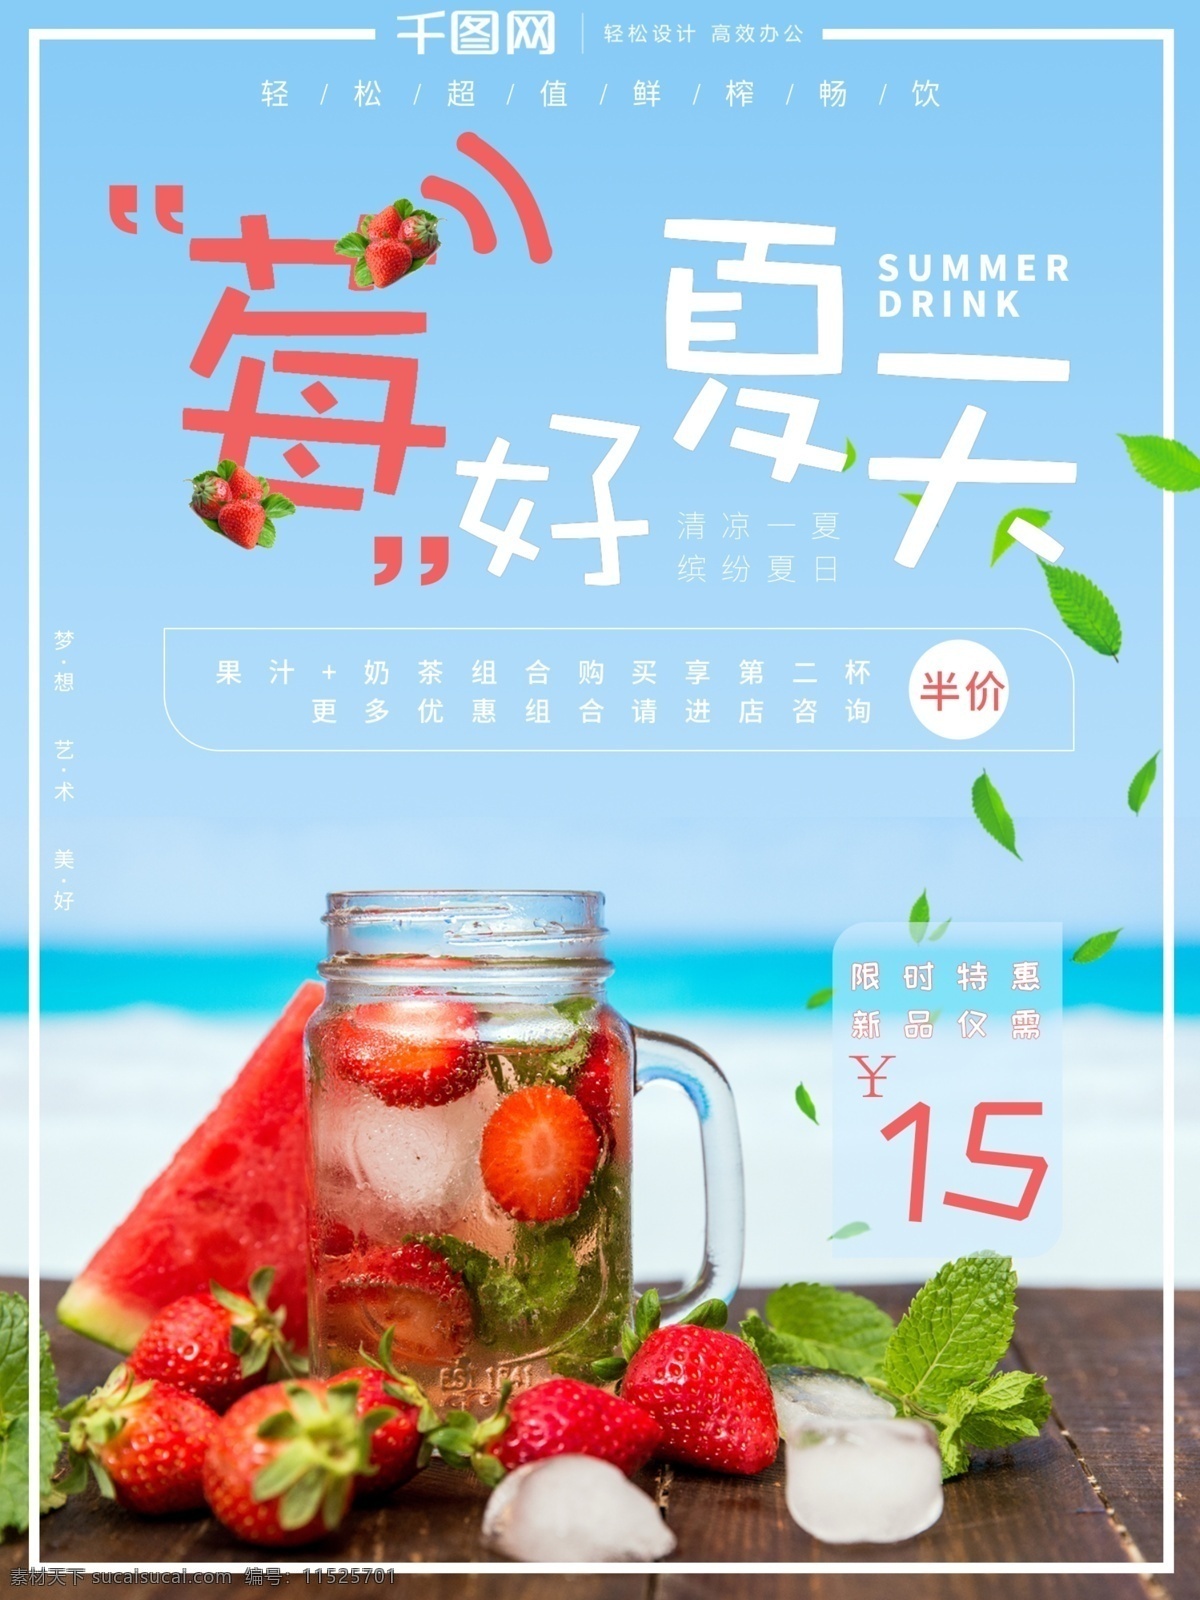 蓝色 清新 莓 好 夏天 美食 海报 草莓 促销 小清新 美食海报 夏季海报 饮品